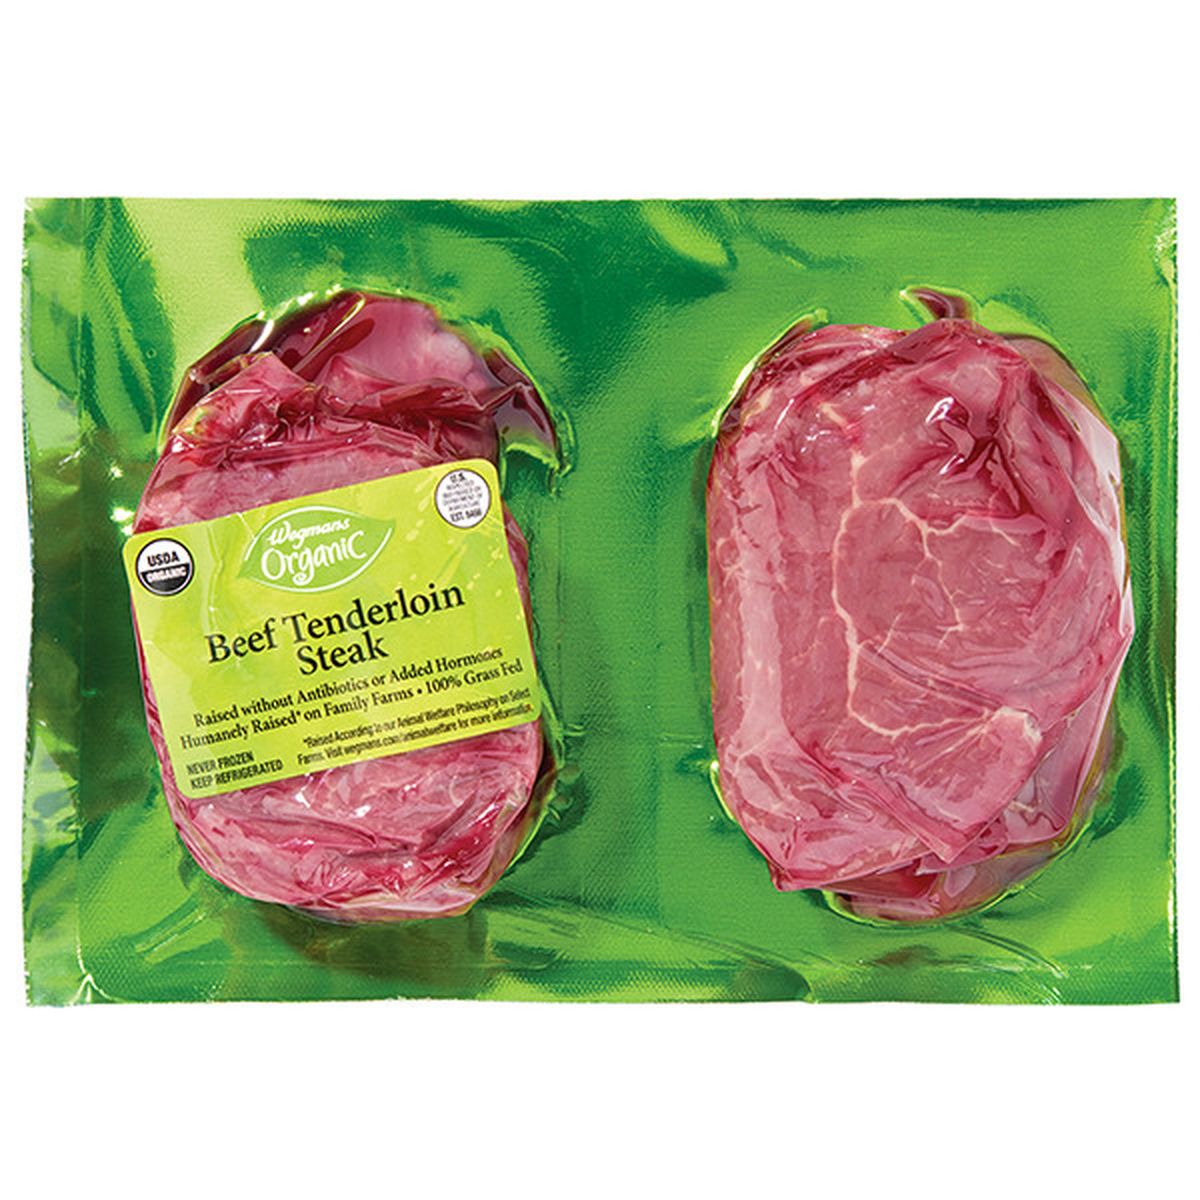 Calories in Wegmans Organic Grass Fed Tenderloin Steak